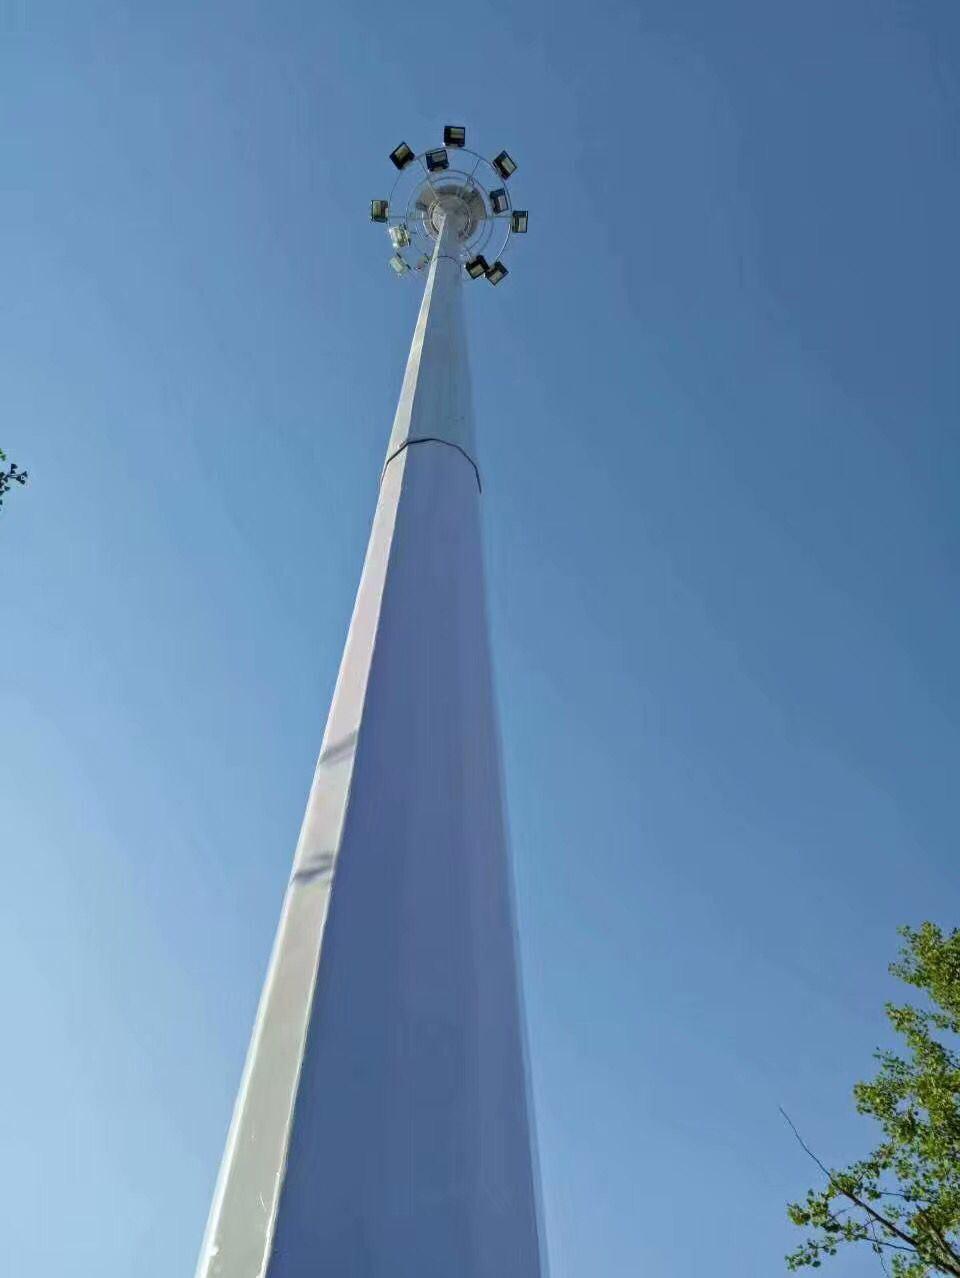 Baode Lights Outdoor 25m 2000W Football Pitch High Mast Lighting Supplier